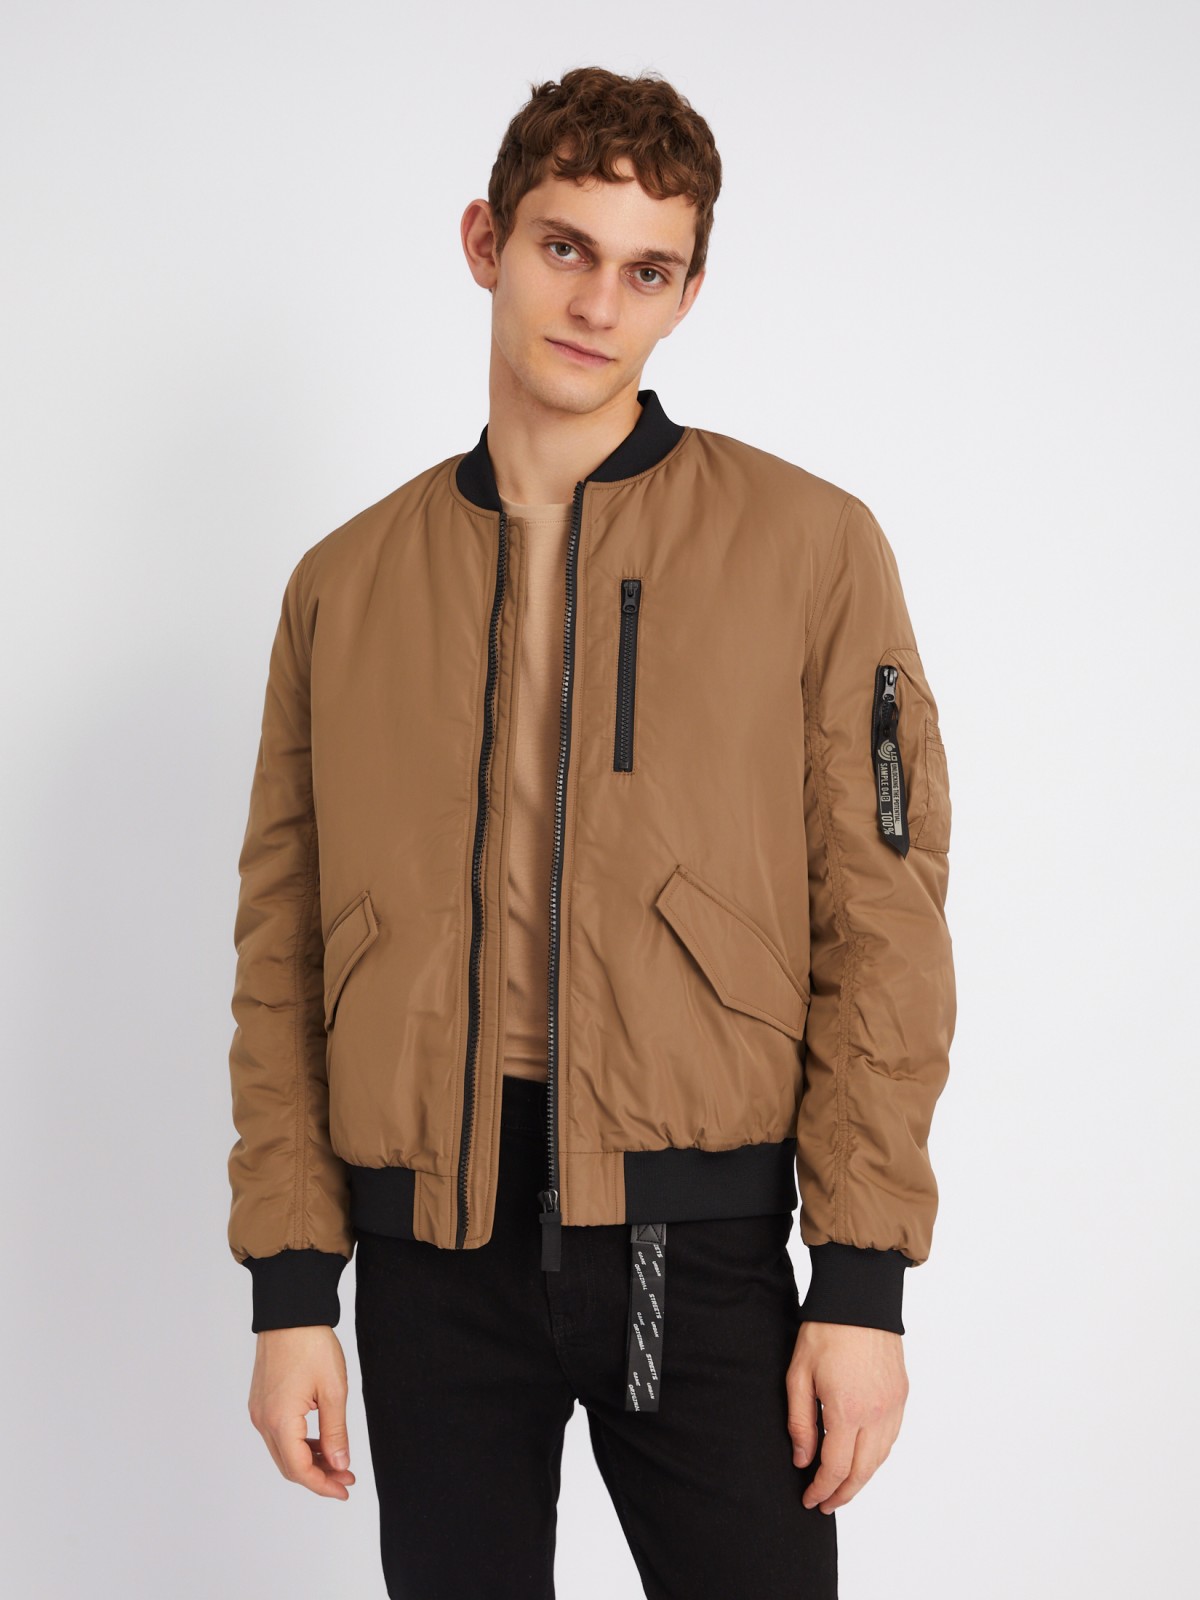 Утеплённая куртка-бомбер укороченного фасона на синтепоне zolla 013335102094, цвет бежевый, размер XL